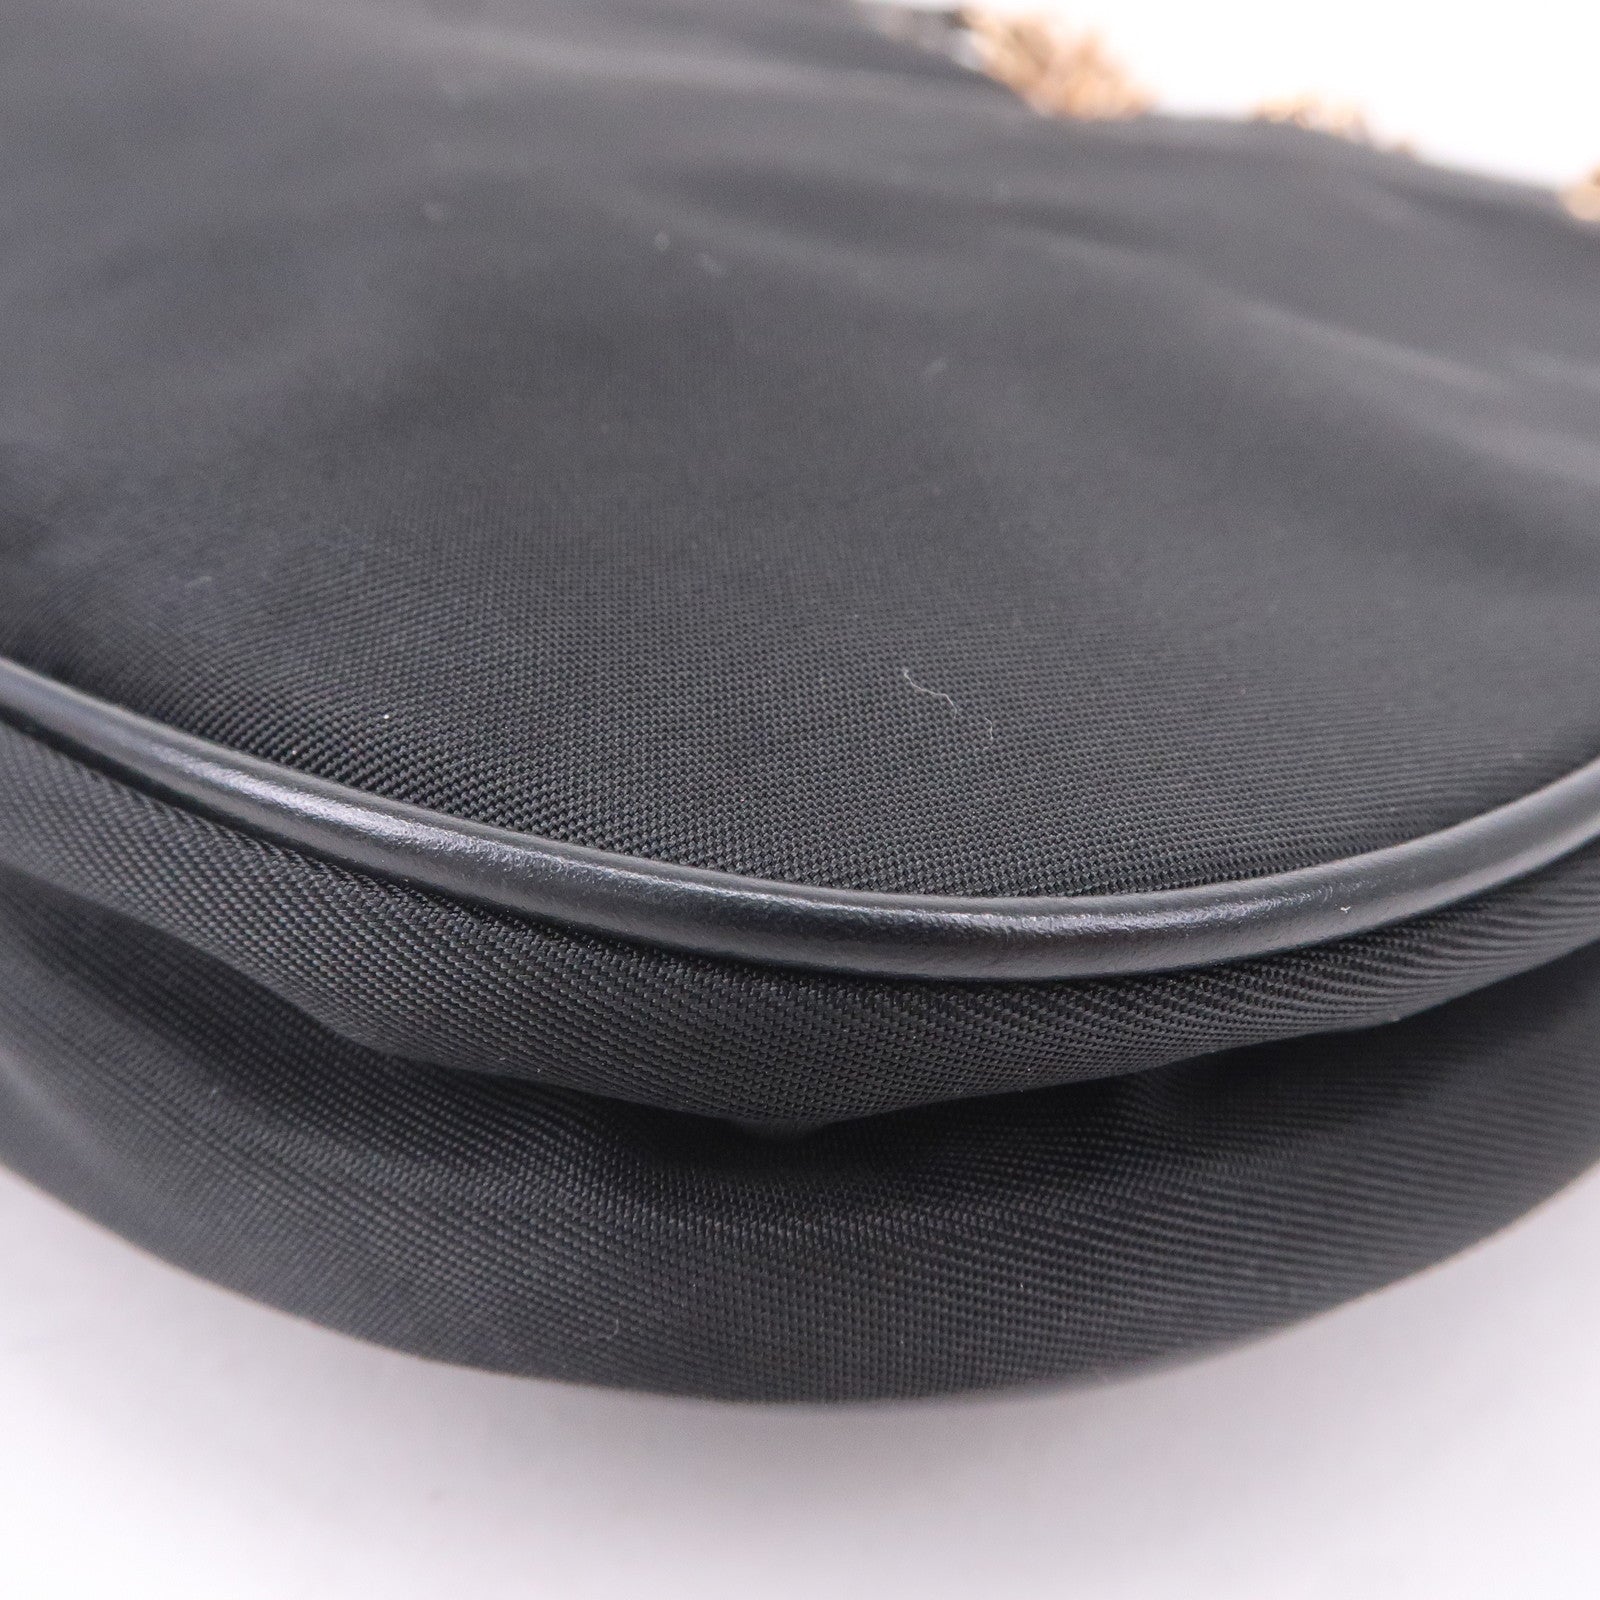 Prada Leather Zipped Pouch